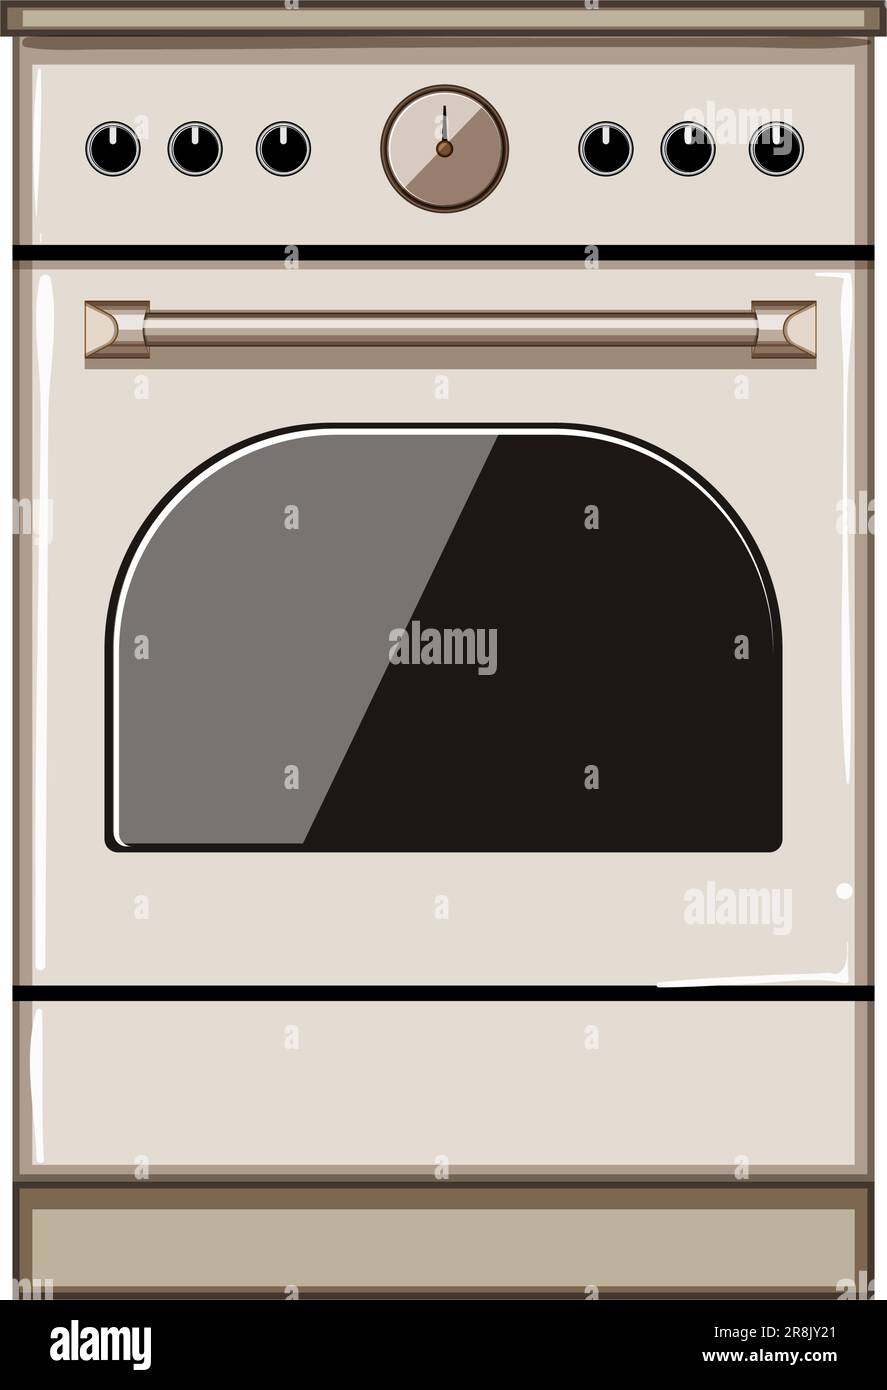 house kitchen stove cartoon vector illustration Stock Vector